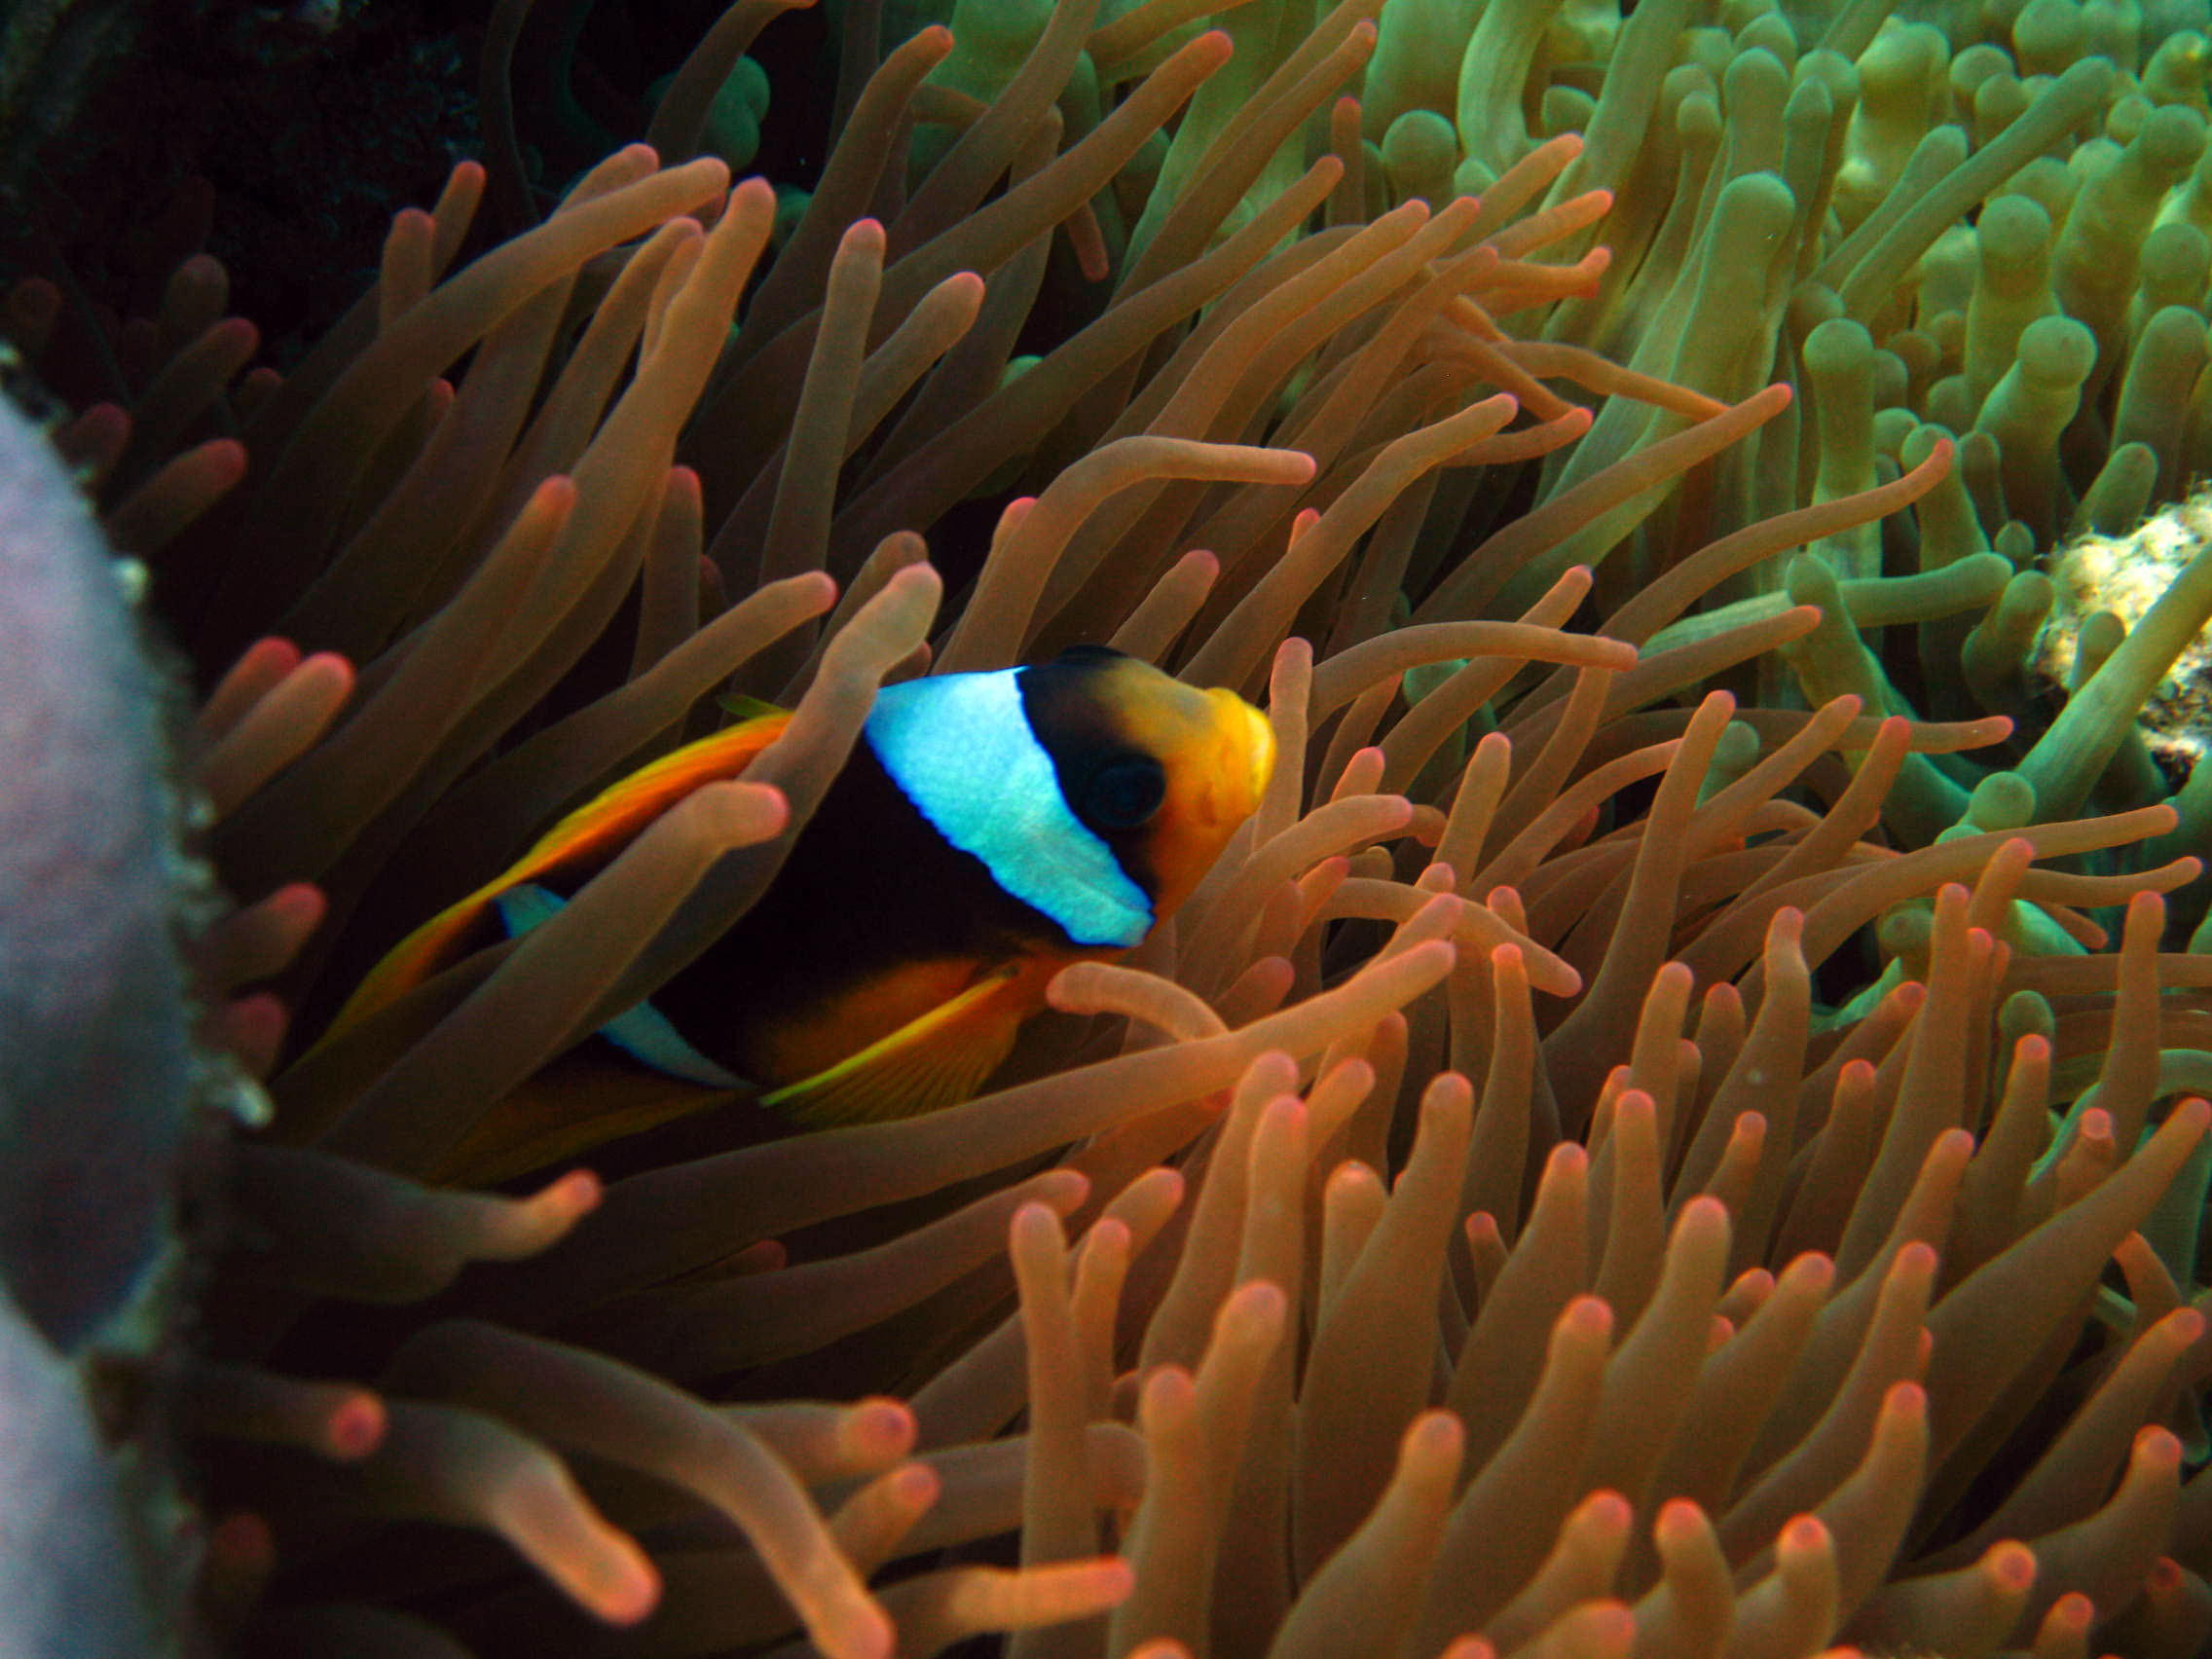 Red sea anemonefish